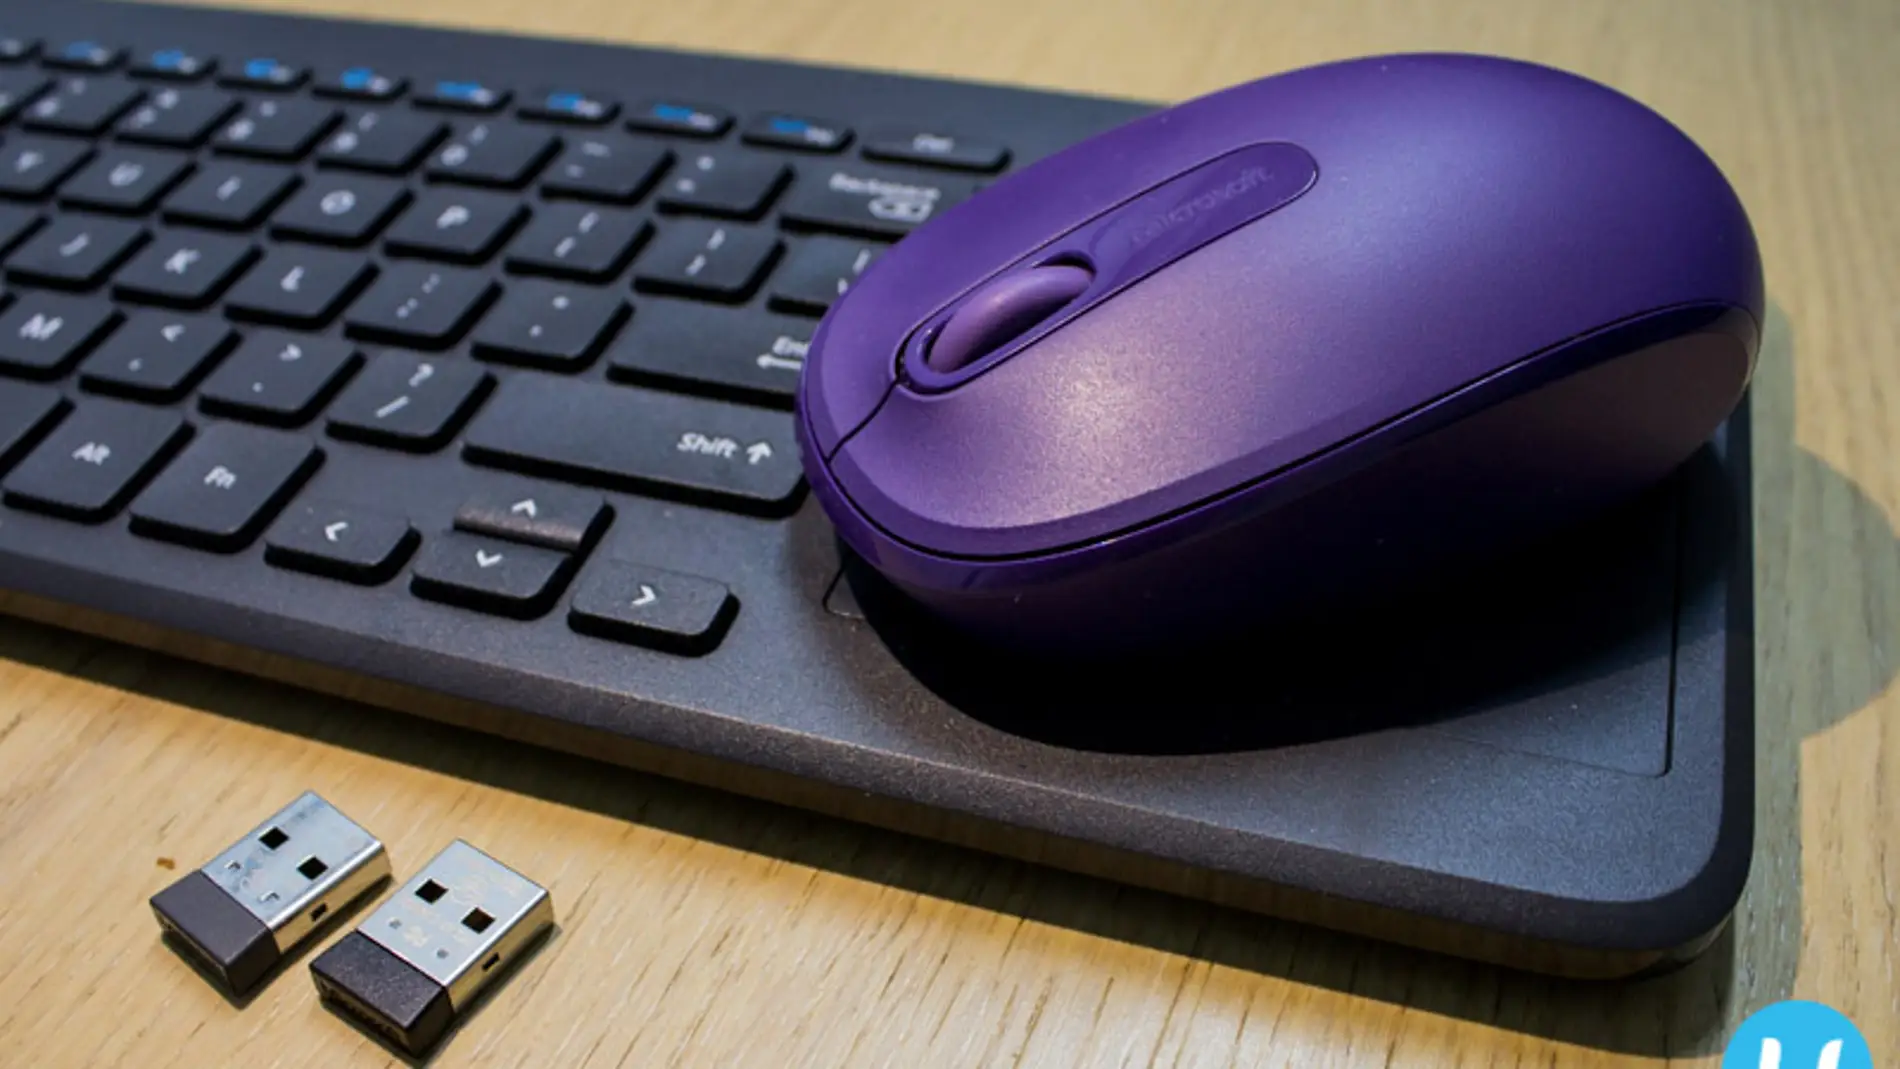 Un ratón y un teclado inalámbricos